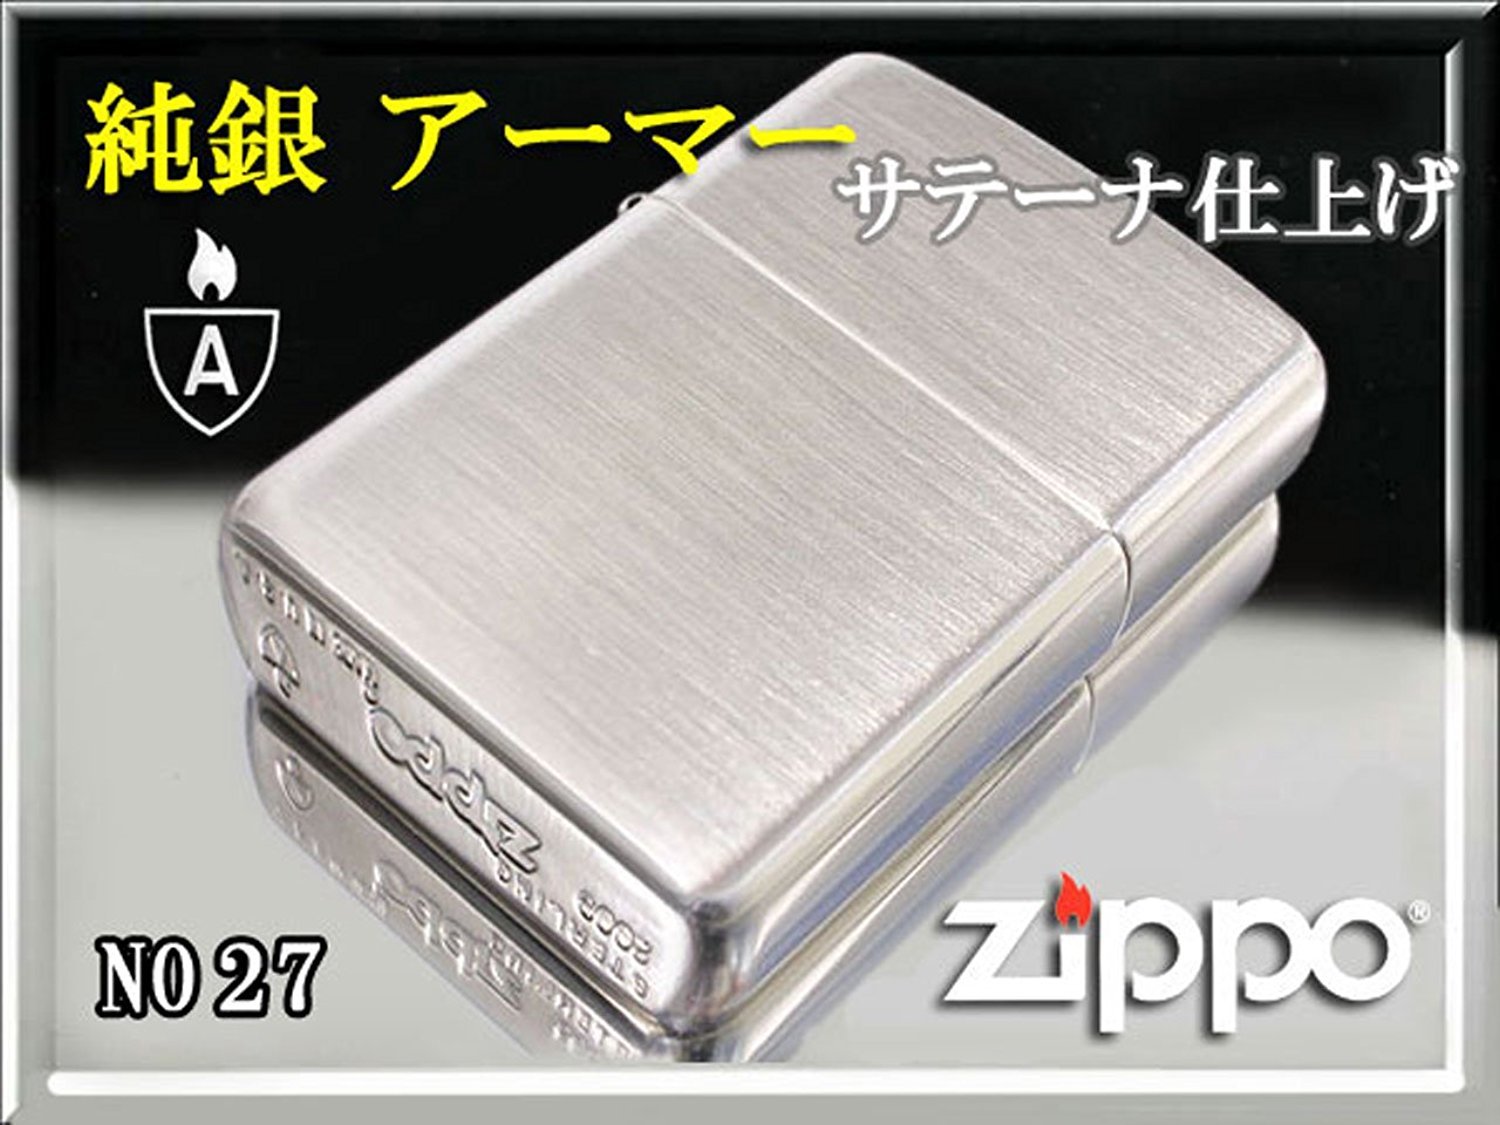 Zippo zippo- Lighter Armor Armor Sterling Sterling Silver Sterling Silver a-ma-sate-na No. (A Little Bit Of... 27 